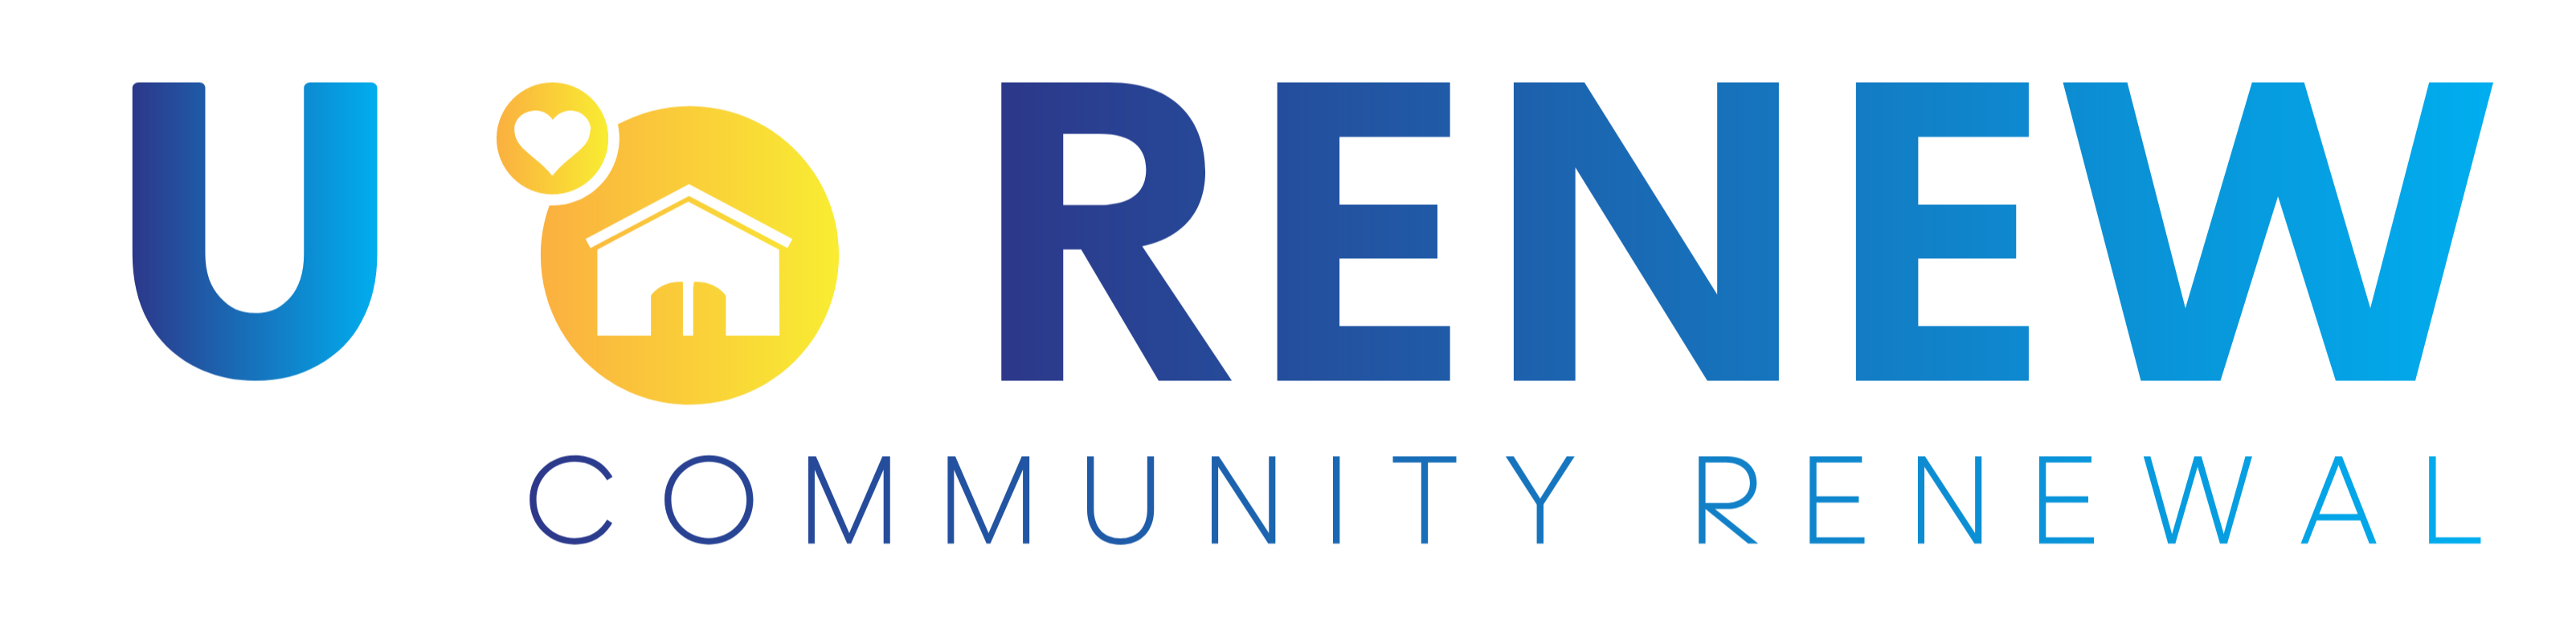 Fundacja U-RENEW logo